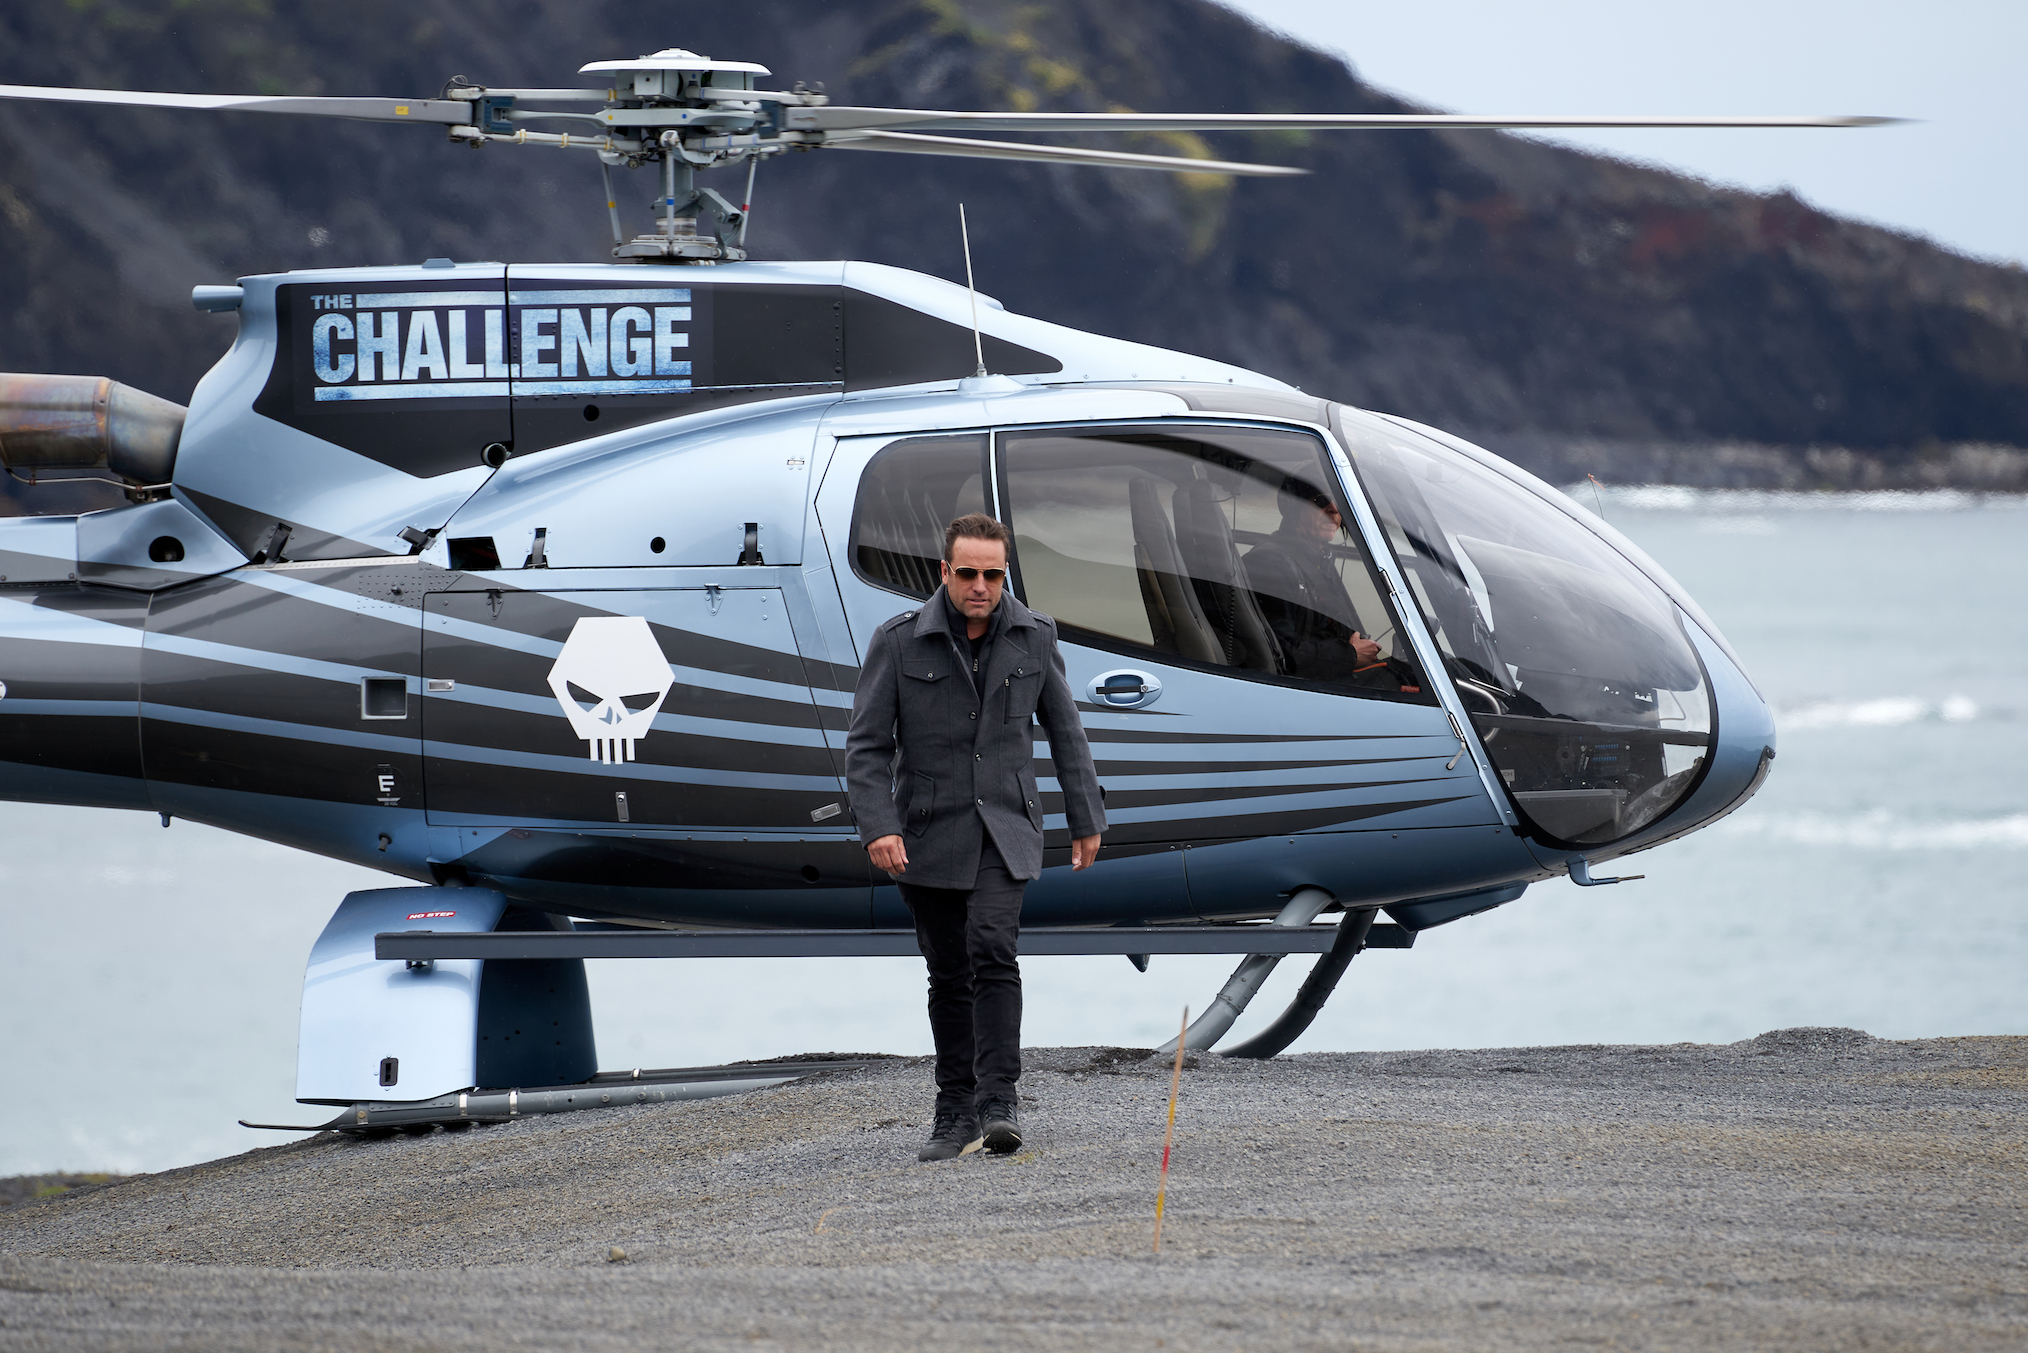 'The Challenge' Host TJ Lavin in Season 36